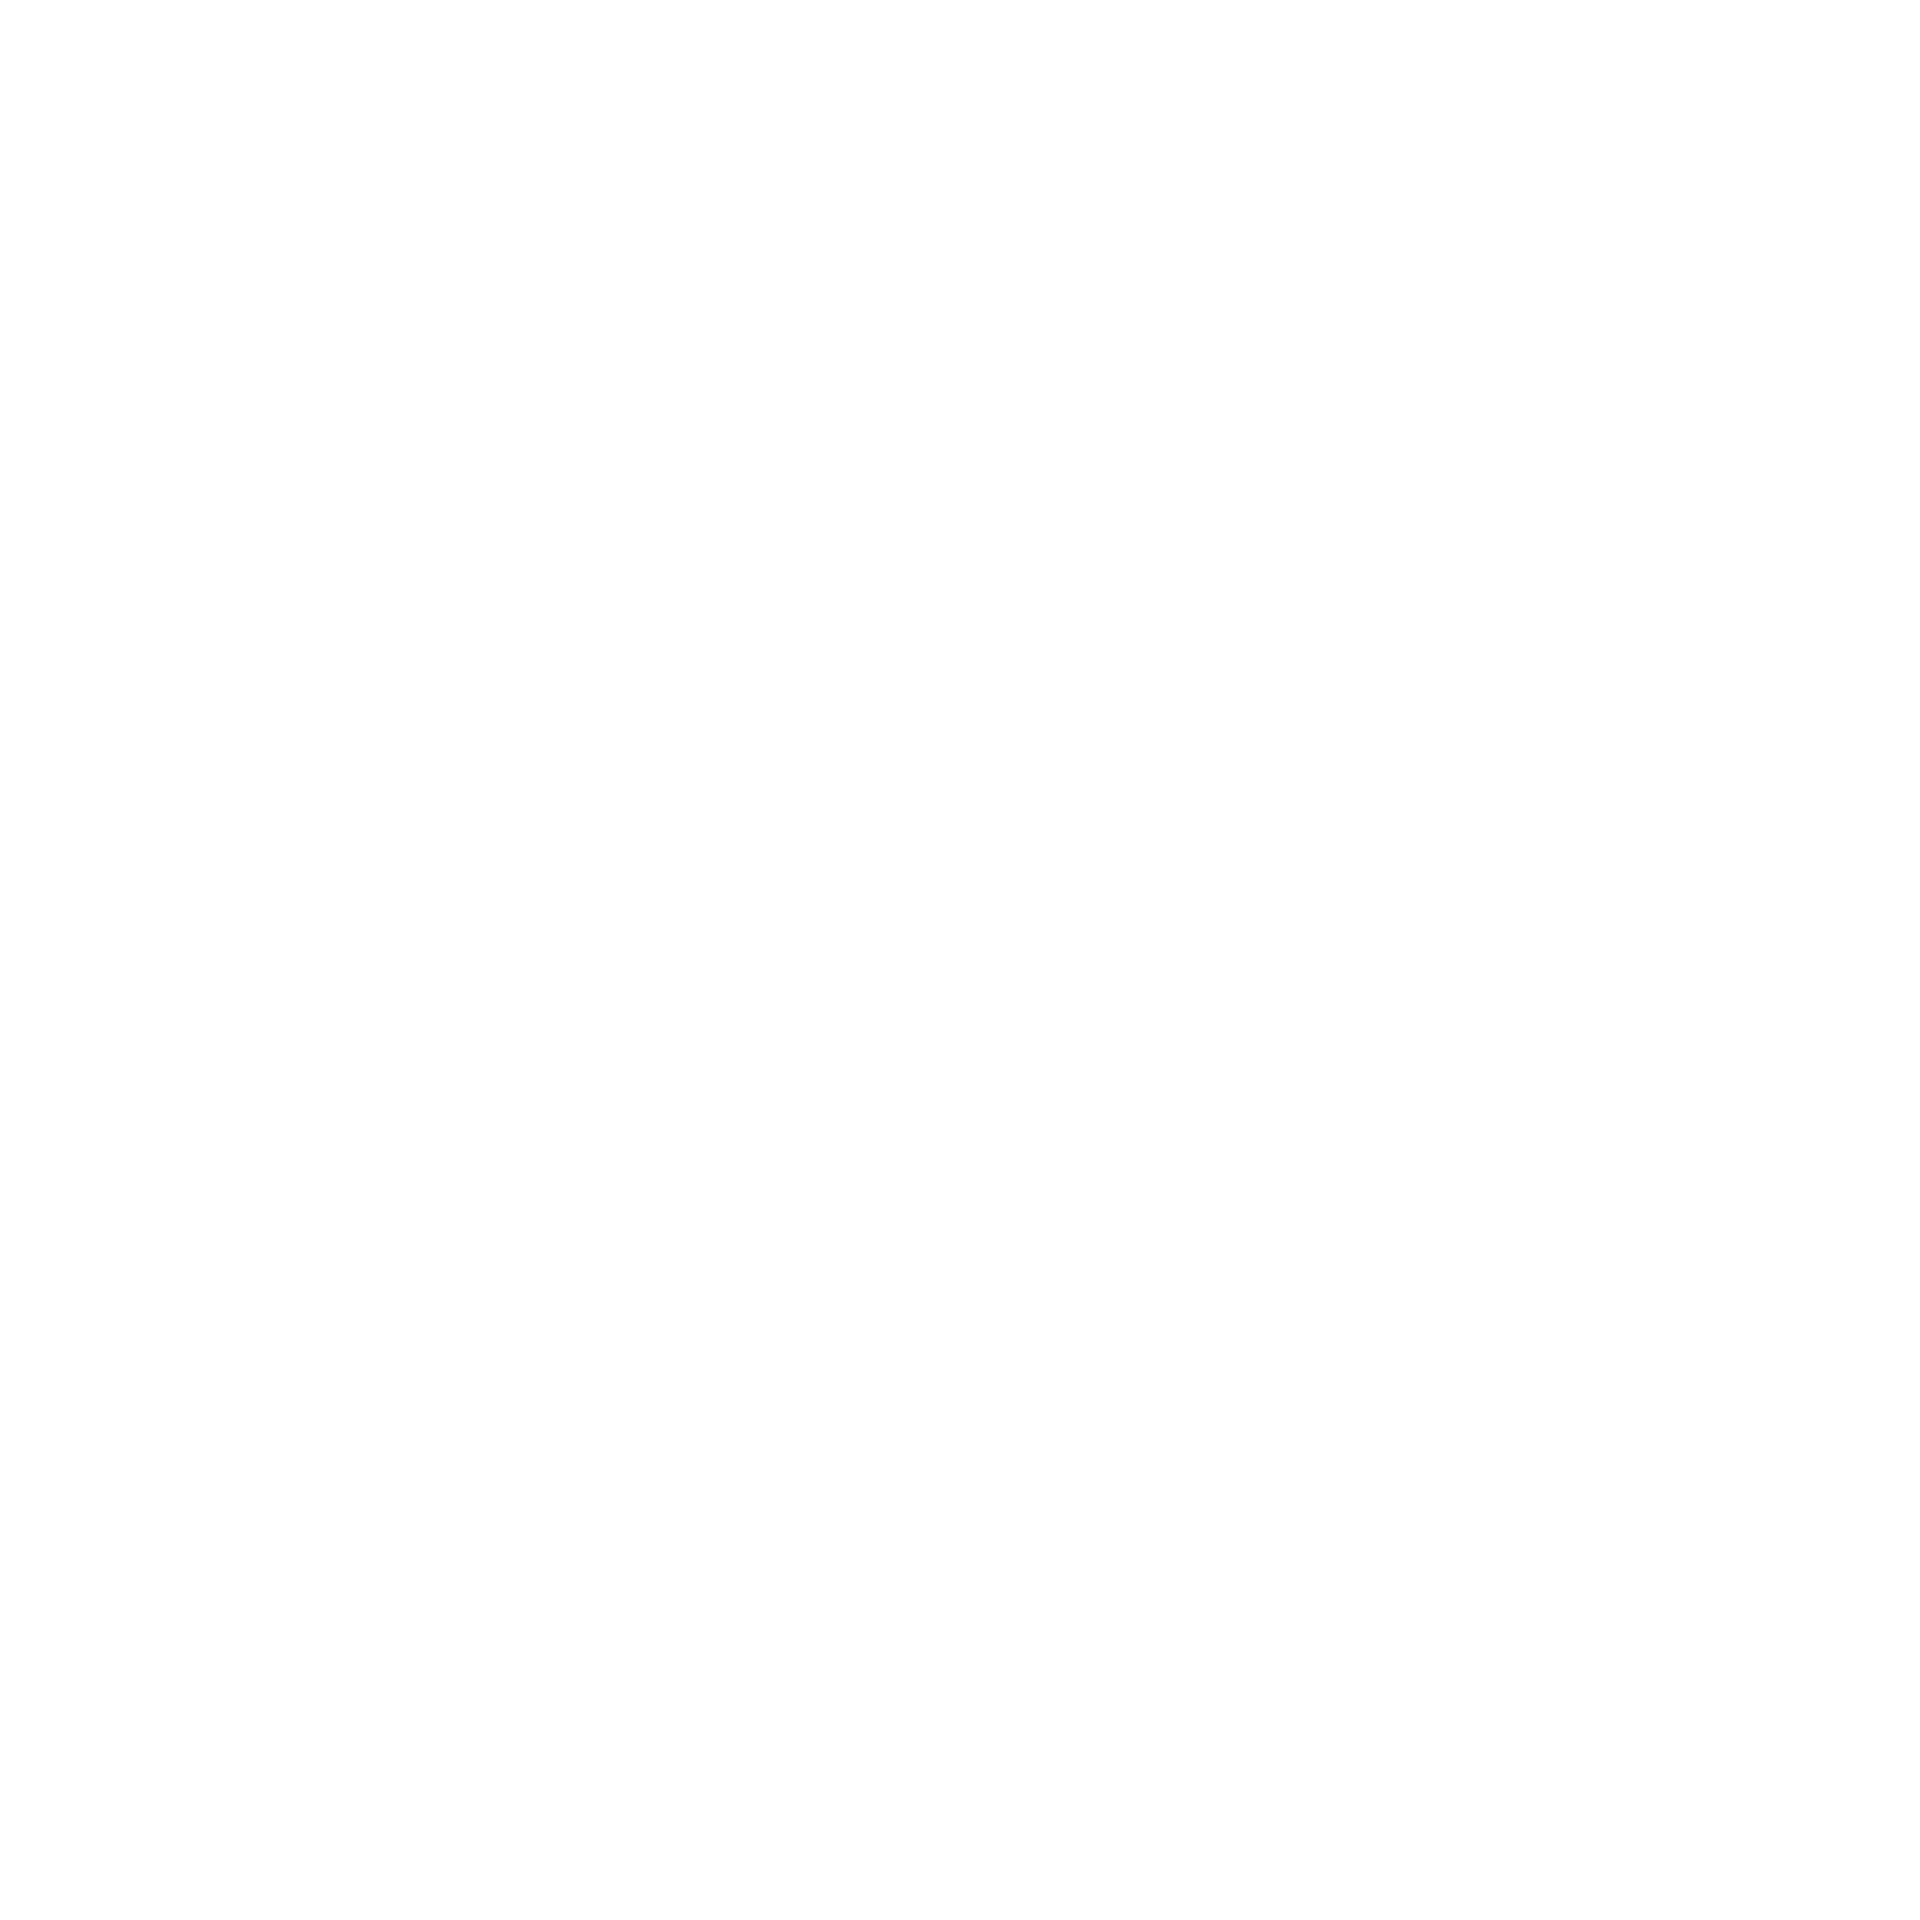 federale logo